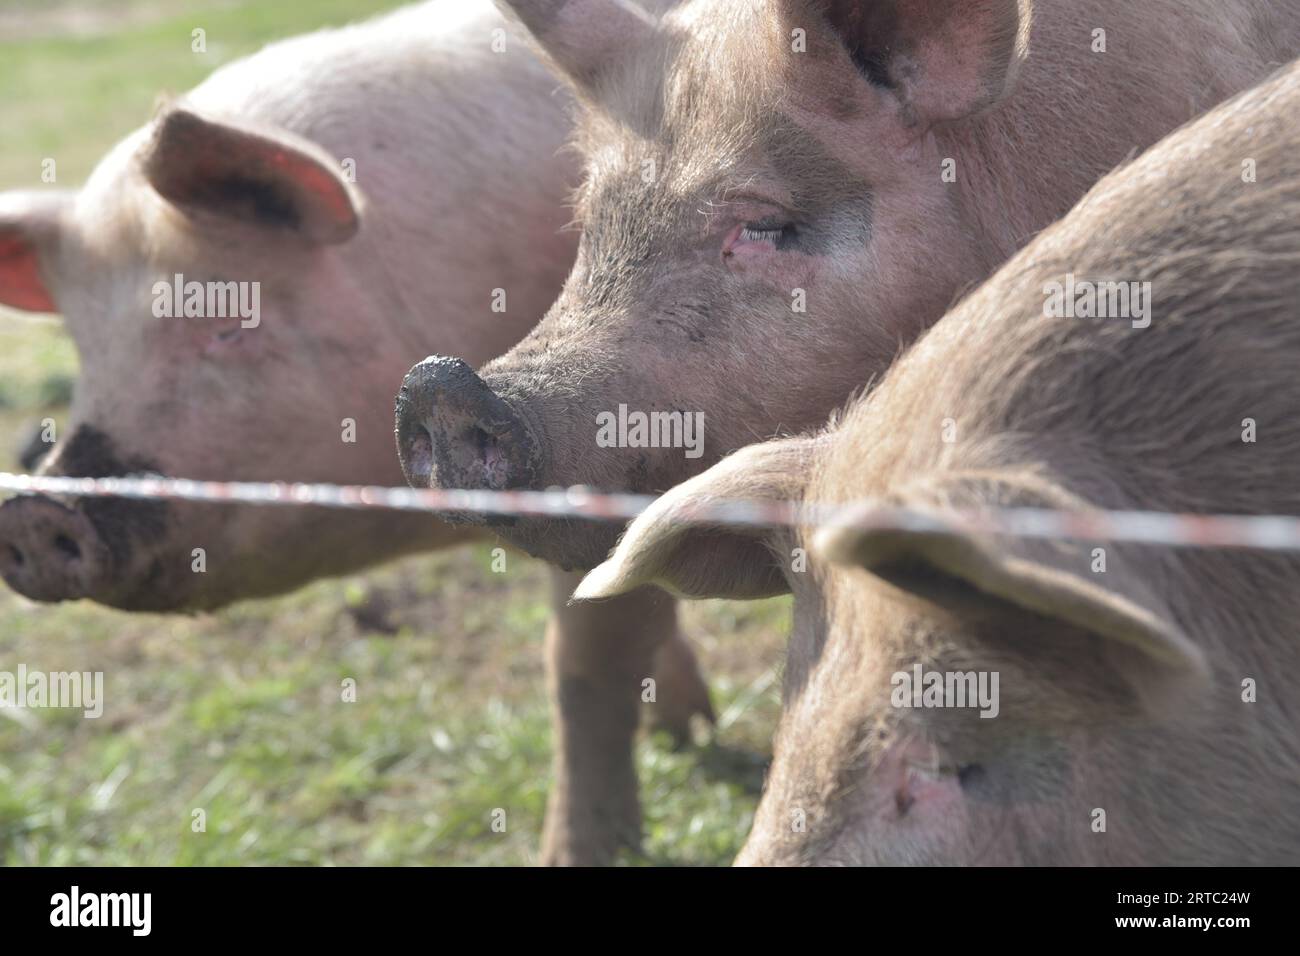 Granja de cerdos y vacas en Argentina Stock Photo